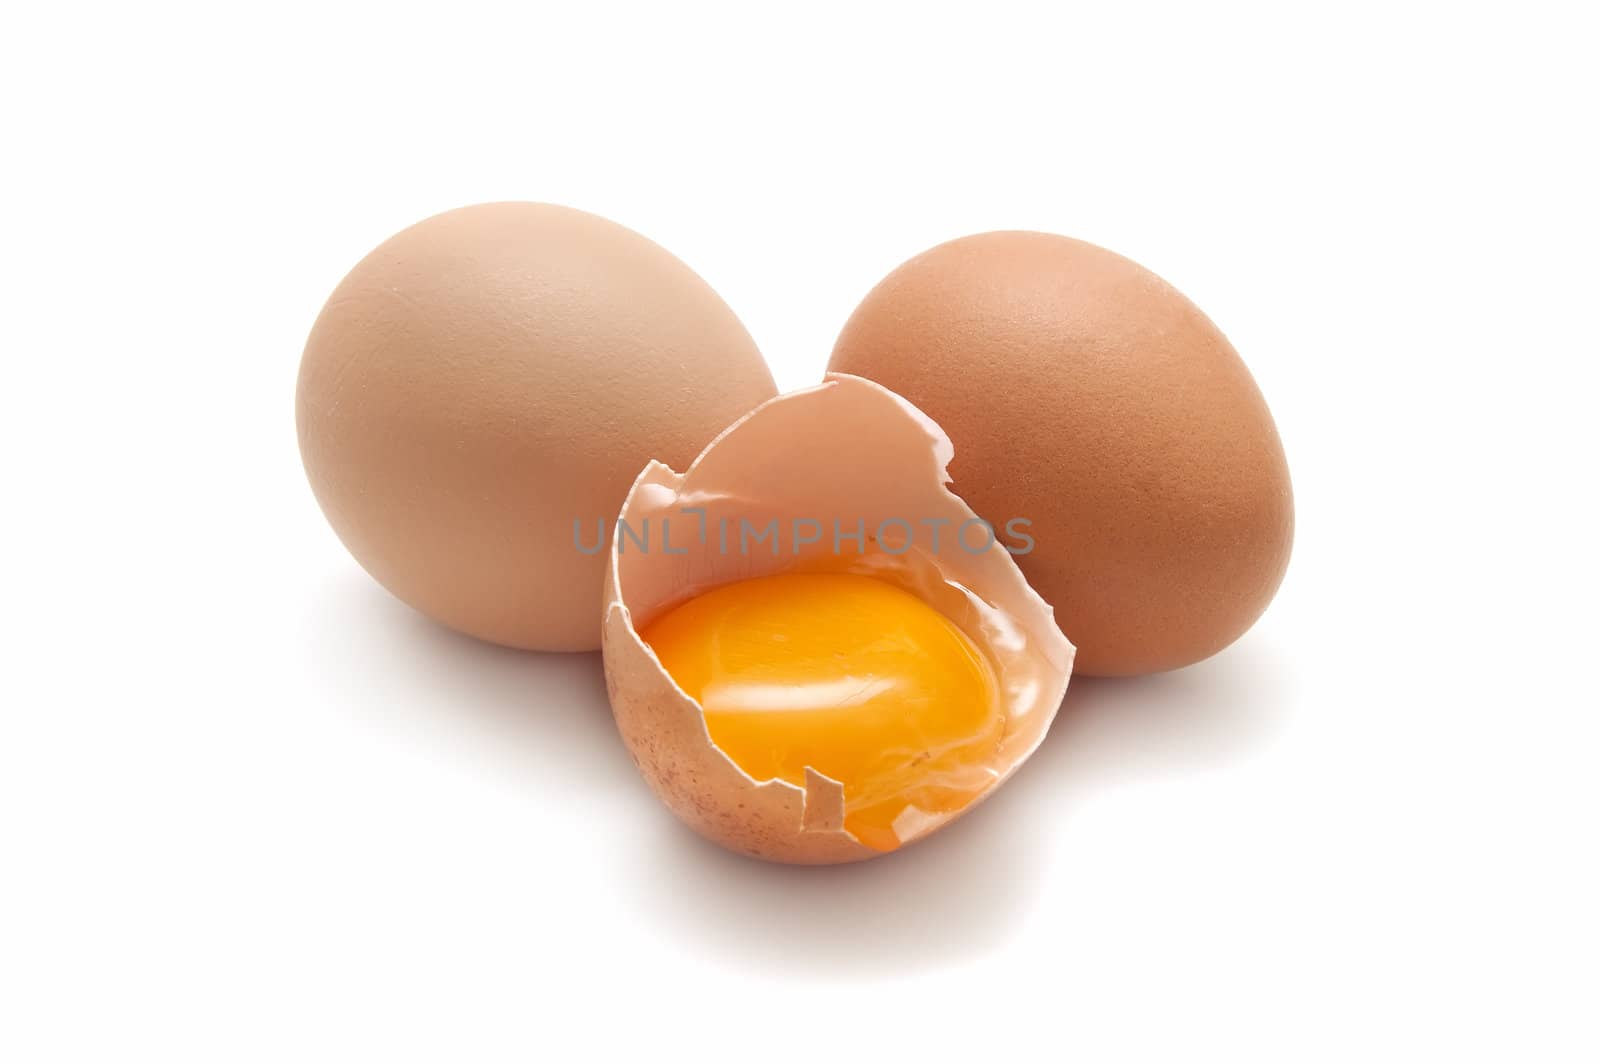 fresh eggs isolated on white background